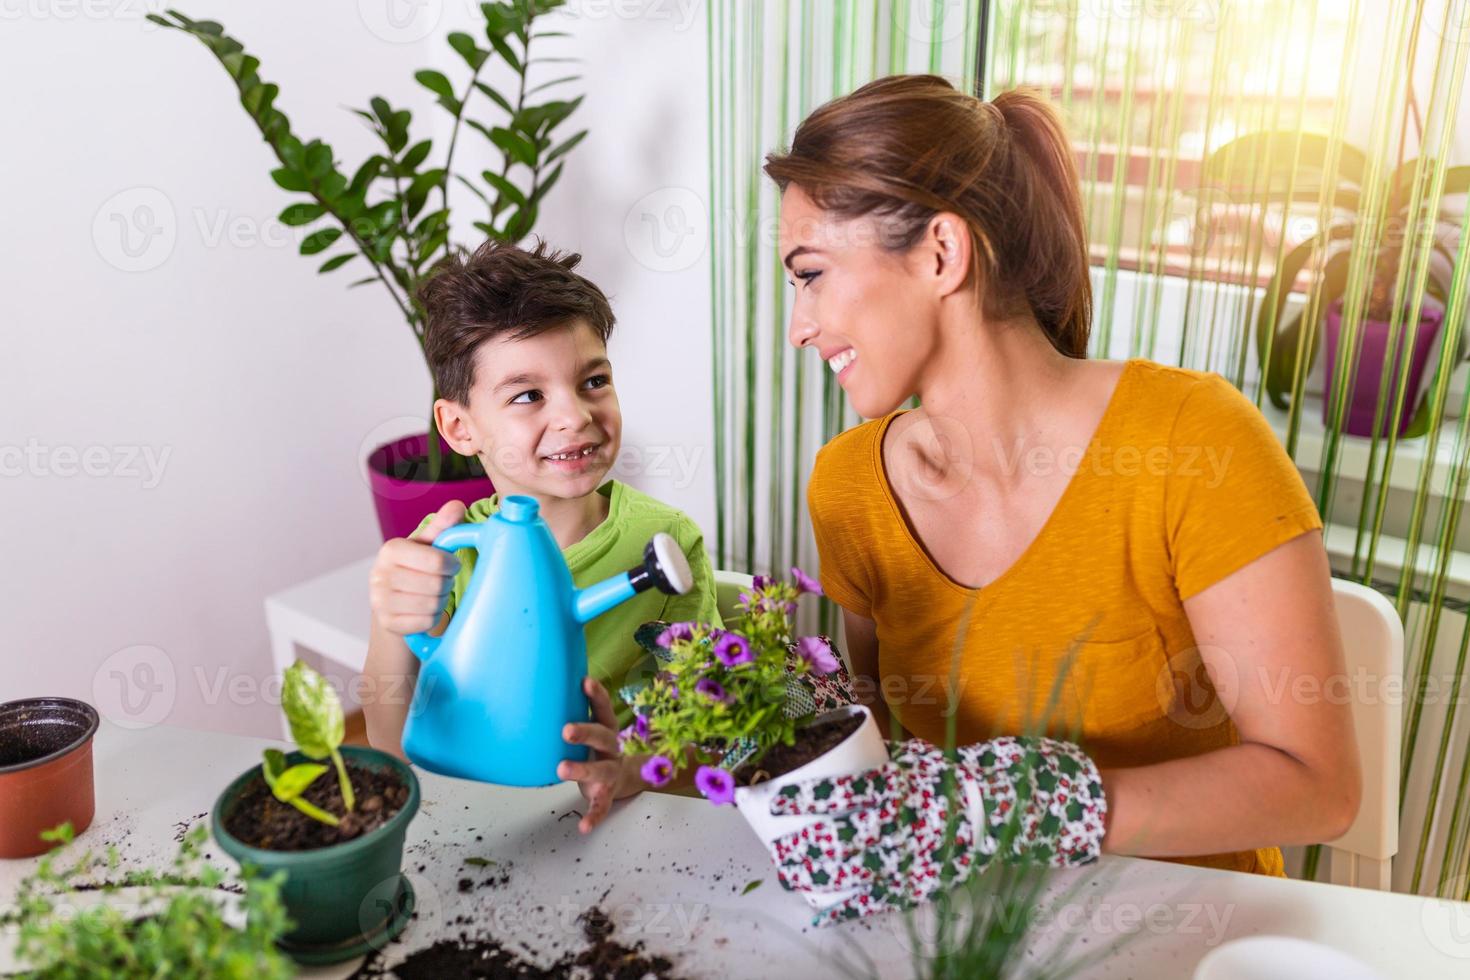 mamá y niño riegan las plantas juntos, la pequeña asistente de jardinero de mamá, cuida de los niños y las flores. chico lindo regando de la regadera, cuidando árboles y plantas, niño mojado foto